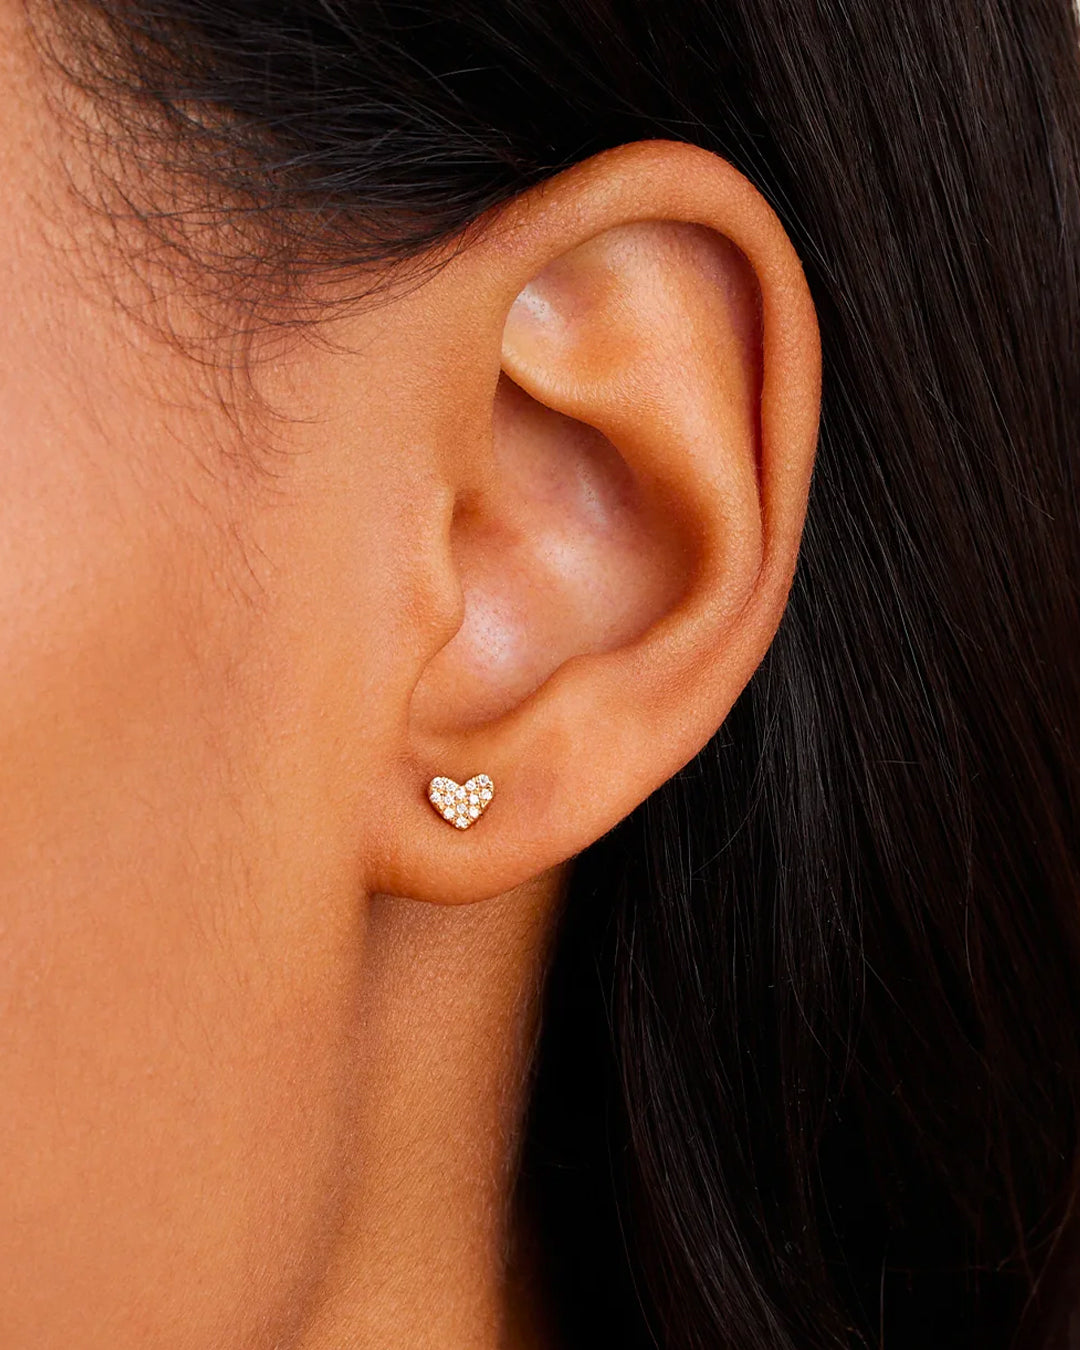 Heart Stud Earring in 14K Solid Gold, Women's by Gorjana